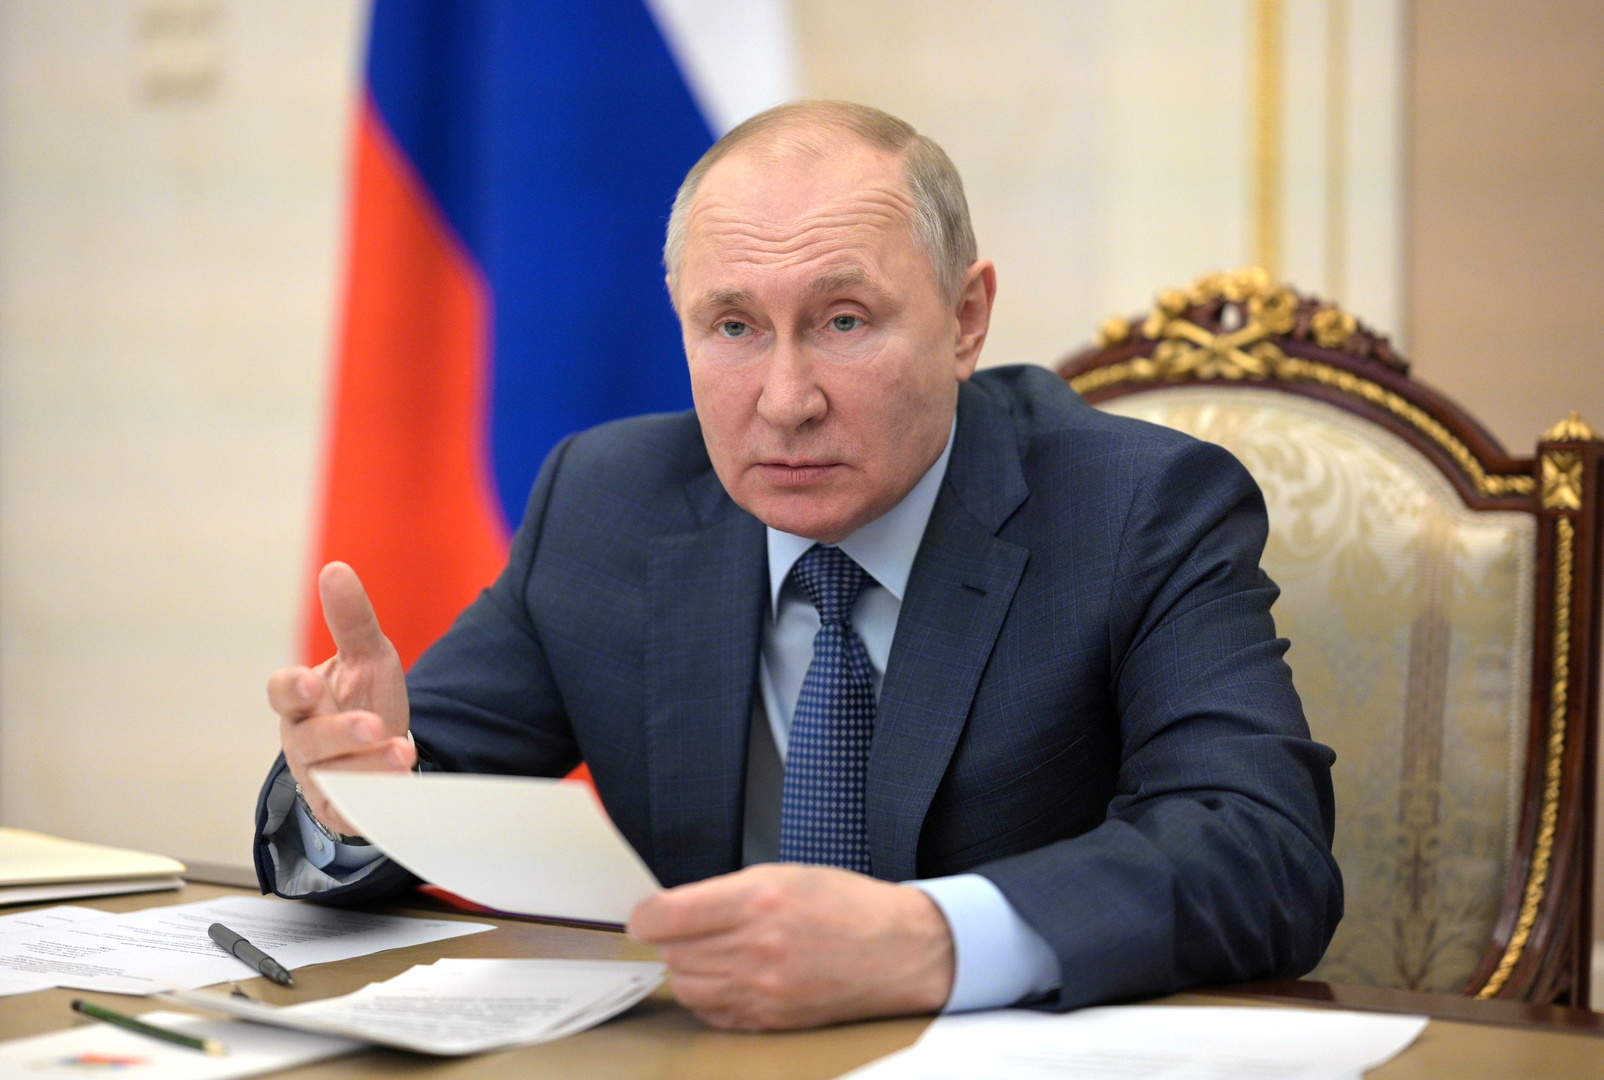 بوتين يدعو للتعاون الدولي للانتصار على كورونا